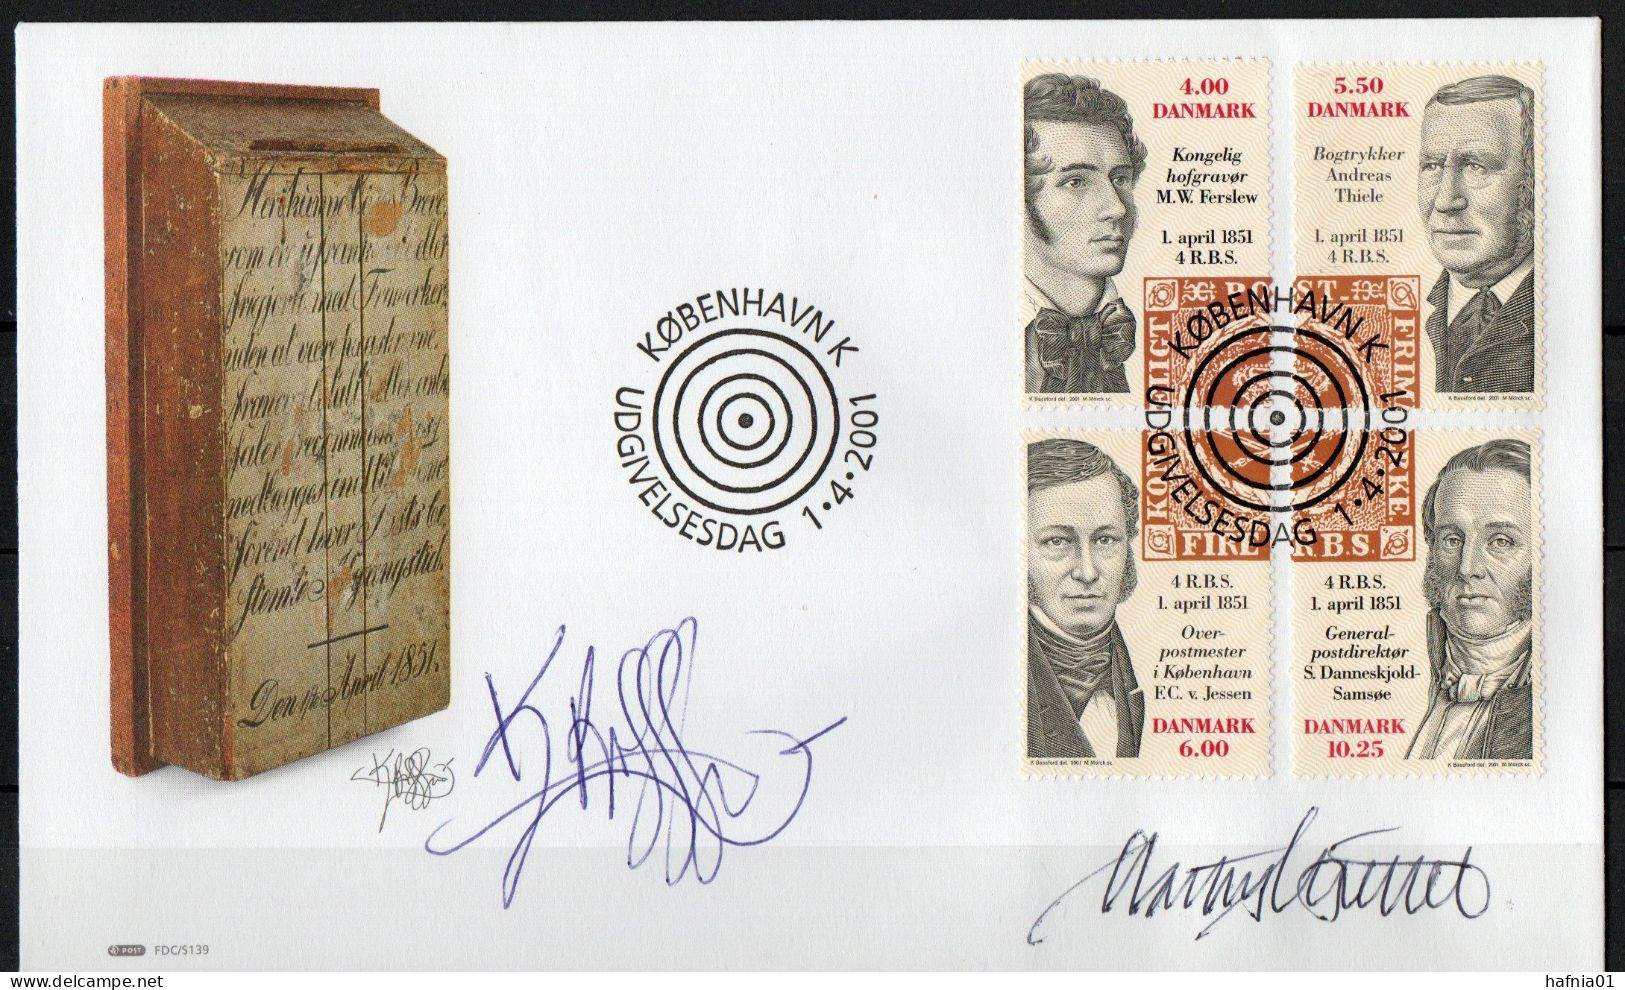 Martin Mörck. Denmark 2001. 150 Anniv Danish Stamps. Michel 1273 - 1276. FDC. Signed. - FDC